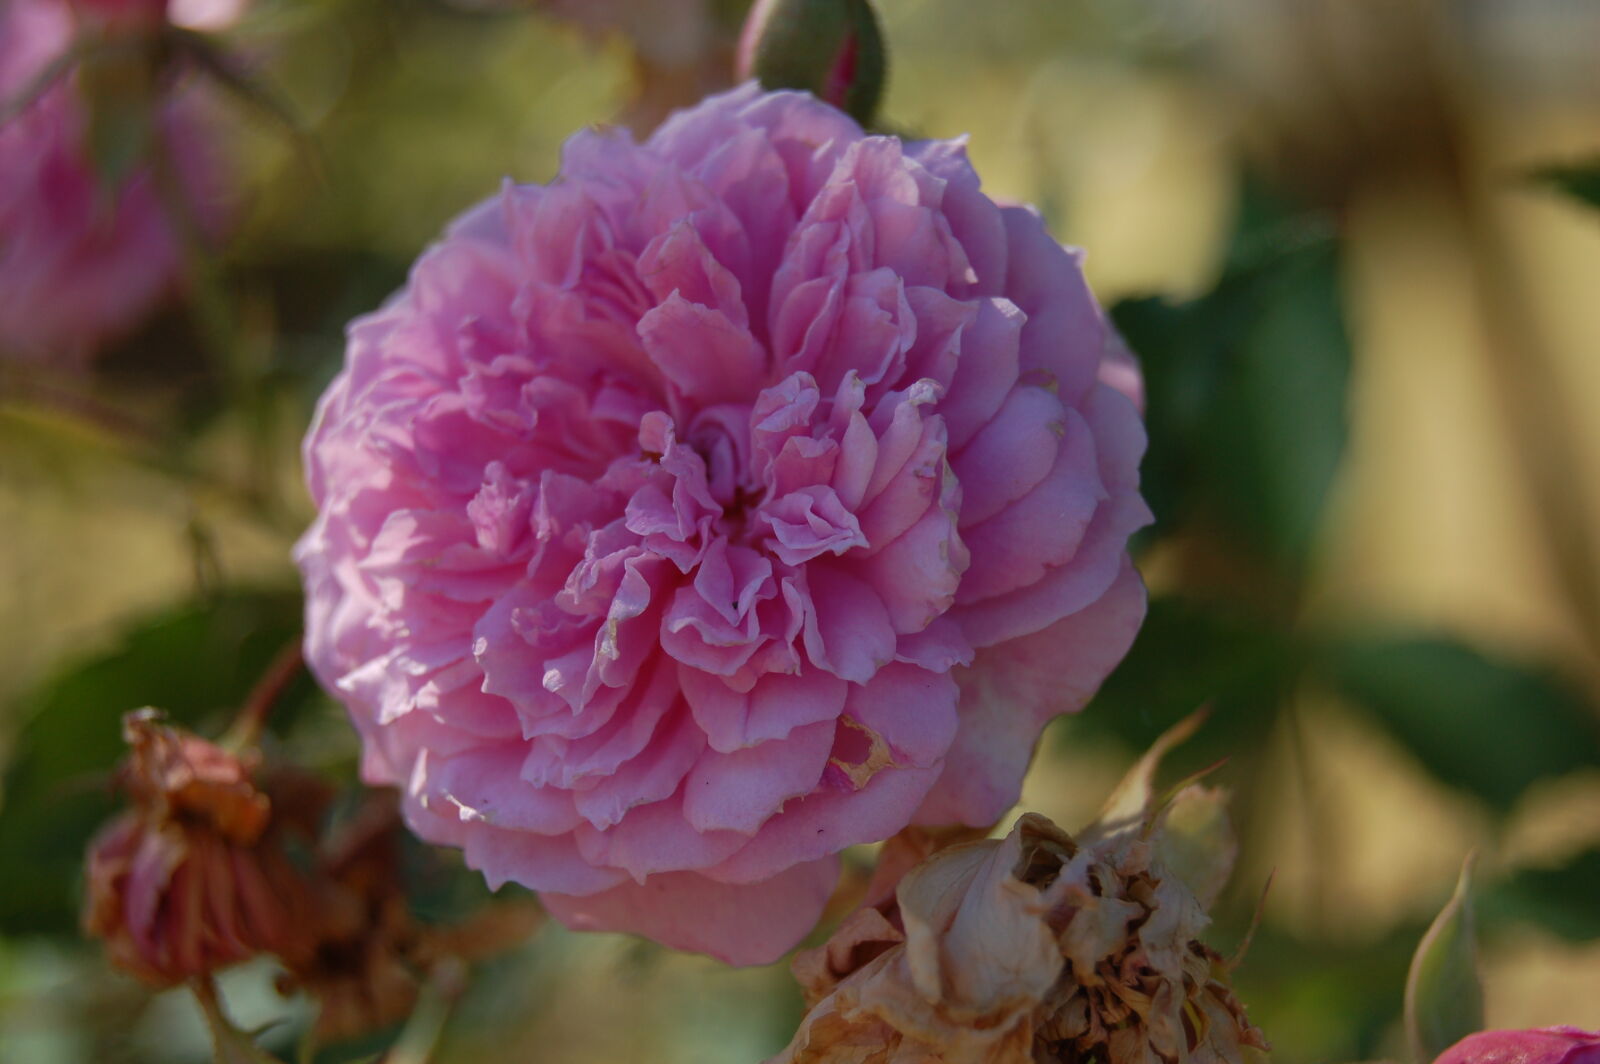 Nikon D50 + AF-S DX Zoom-Nikkor 18-55mm f/3.5-5.6G ED sample photo. Flower, garden, pink, flower photography